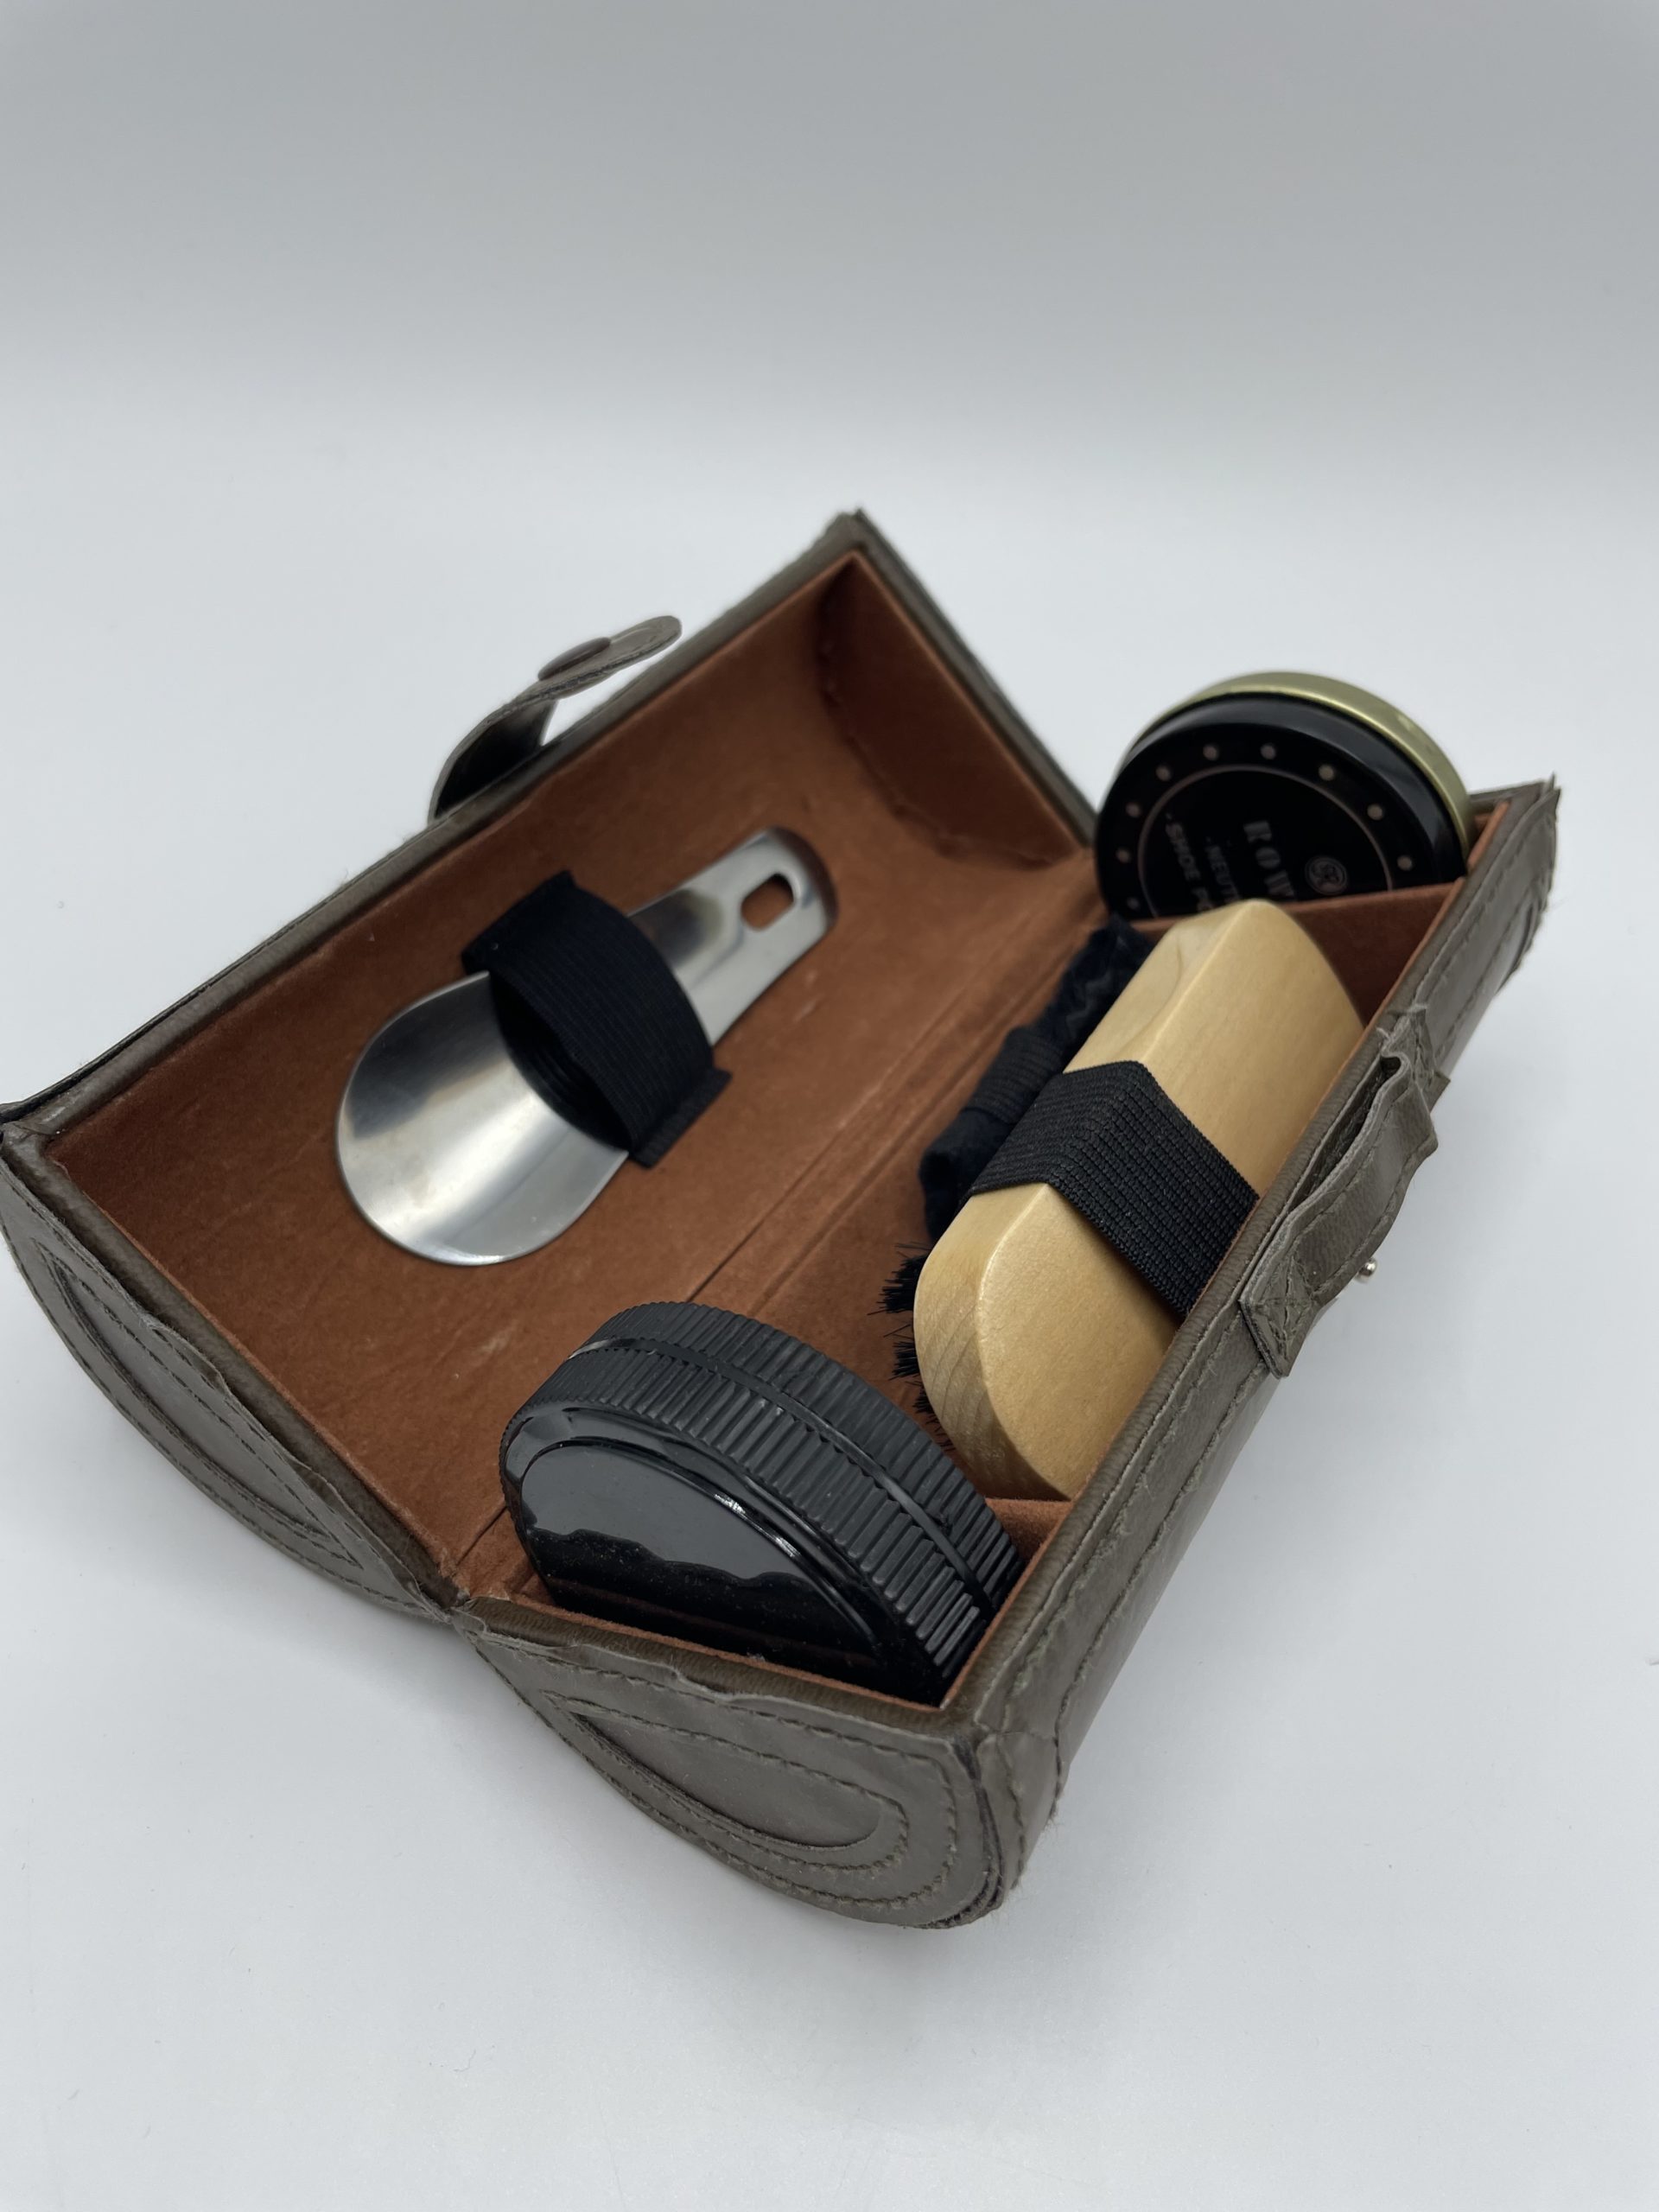 Kit de cirage pour chaussures en cuir - Fabrication artisanale